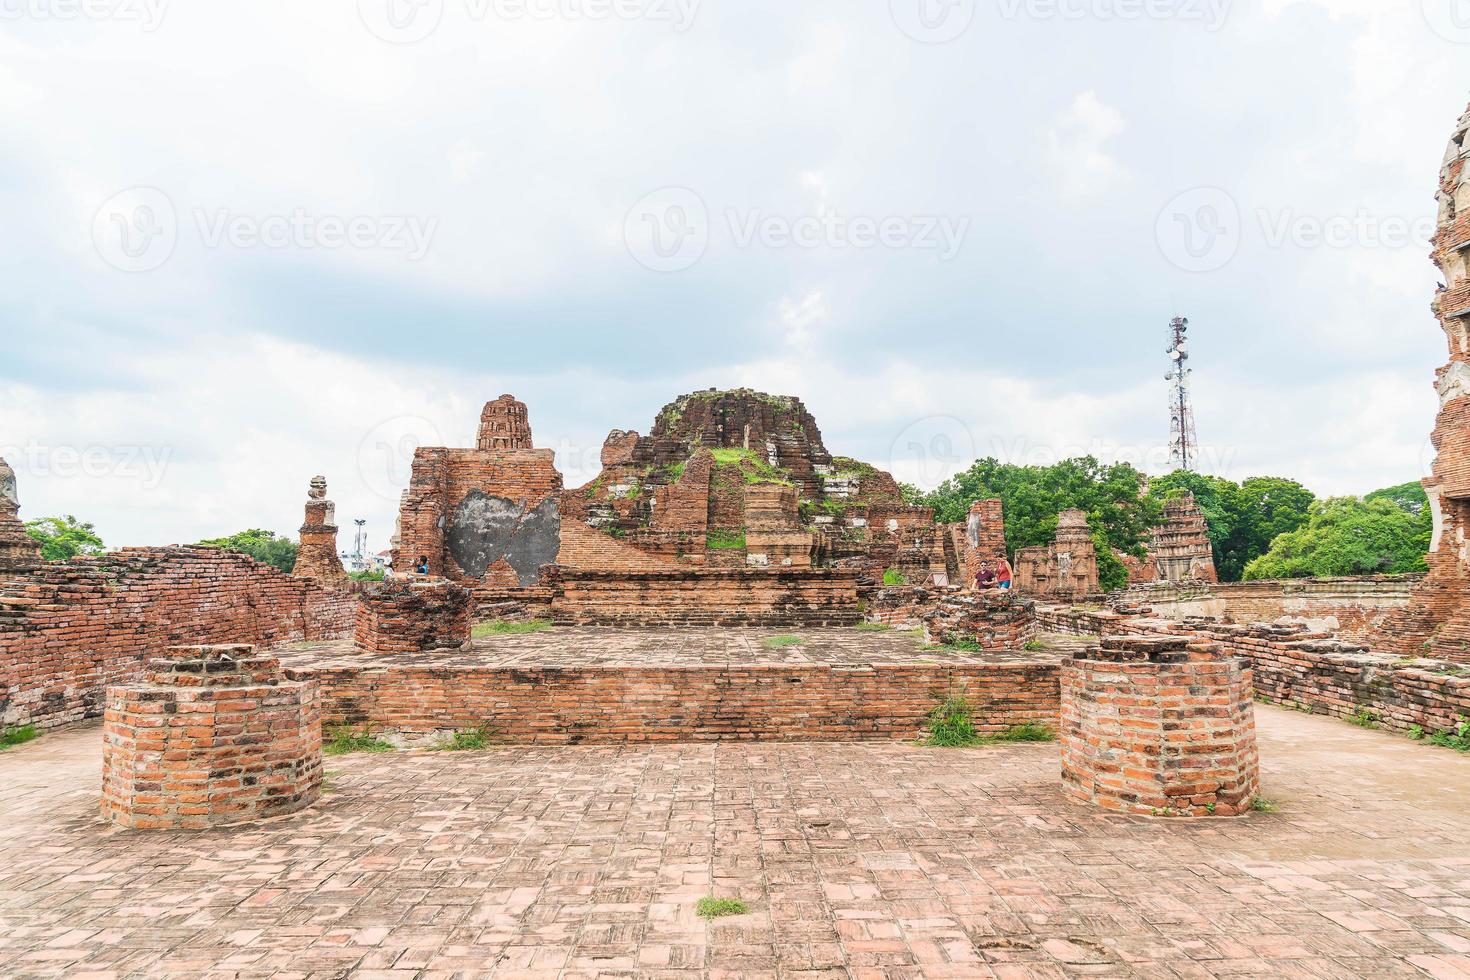 prachtige oude architectuur historisch van ayutthaya in thailand - verhoog de kleurverwerkingsstijl foto